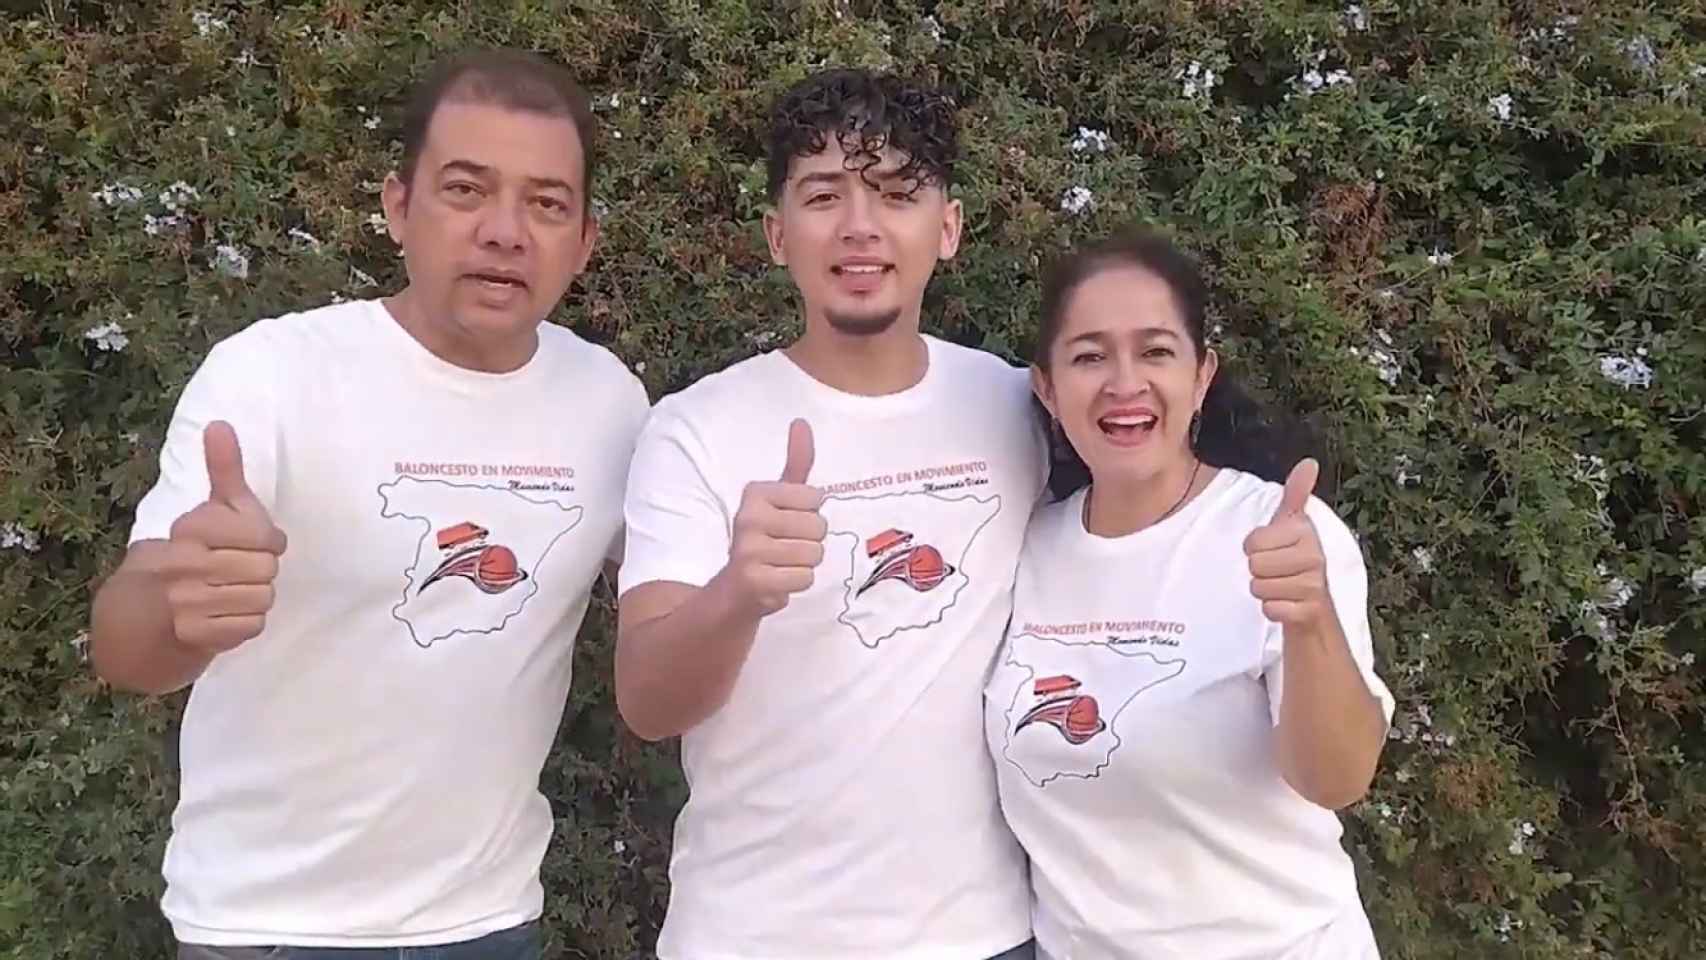 Los integrantes del proyecto Baloncesto en movimiento, ganador del Premio Liga Endesa de Corazón